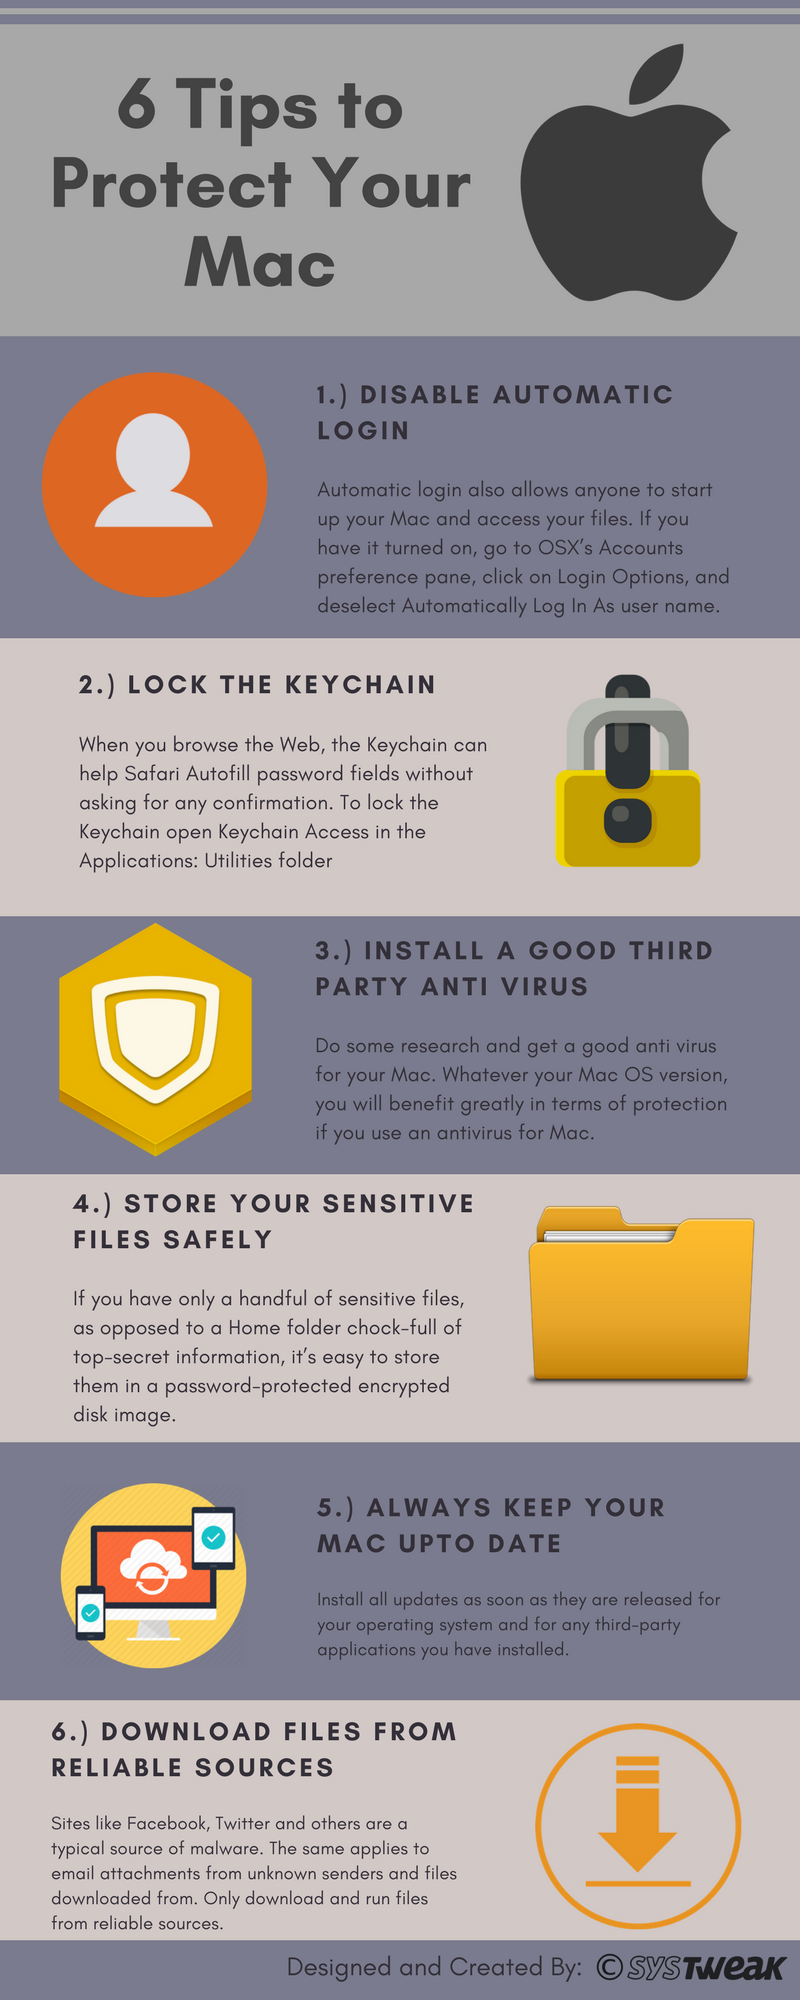 6 këshilla për të mbrojtur Mac-in tuaj – Infographic